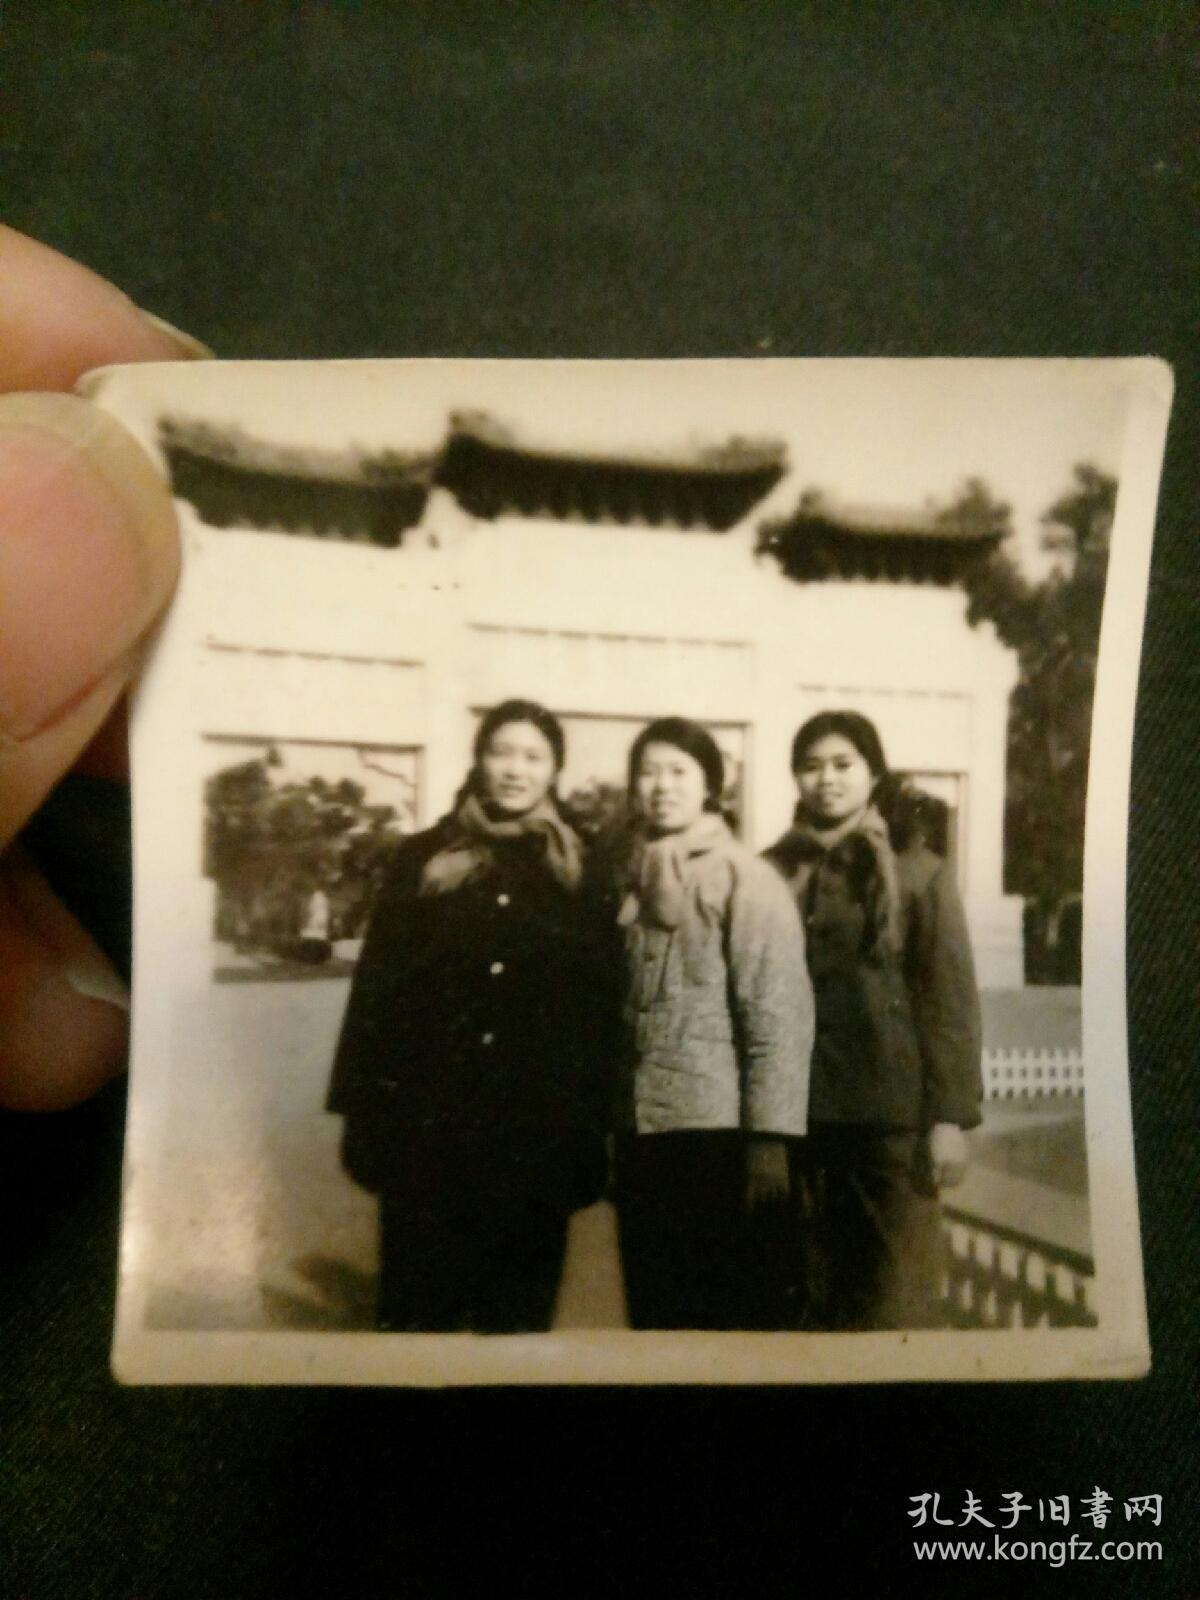 上世纪三位青春少女 背景为北京某老牌楼 少女身穿建国初外套棉袄 左右两少女服装看应为军属 老照片